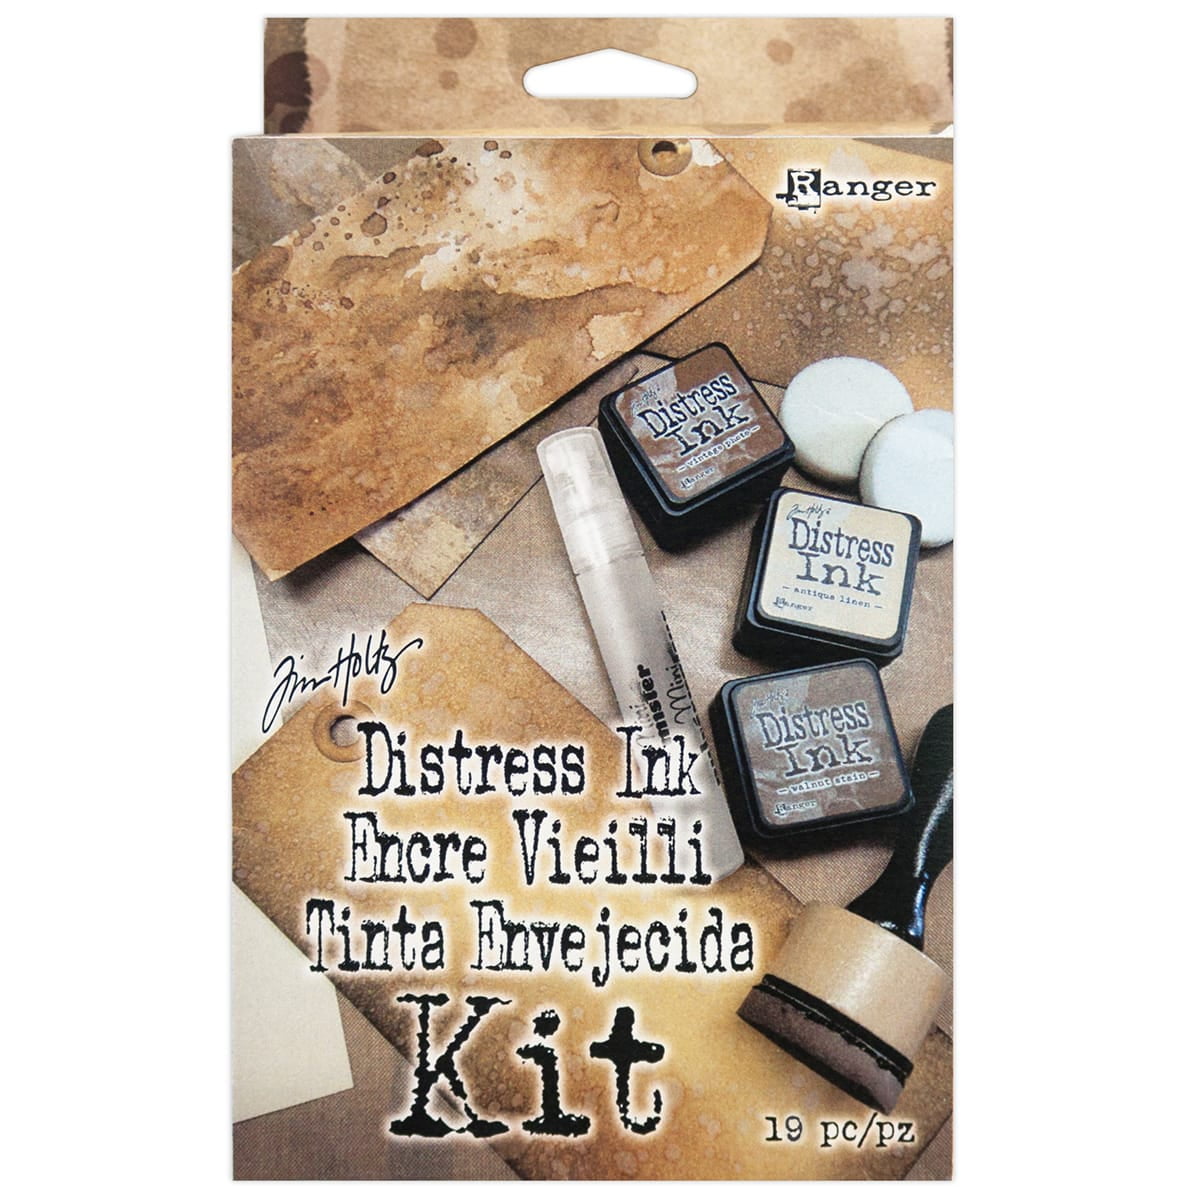 Tim Distress Ink Kit - Walmart.com